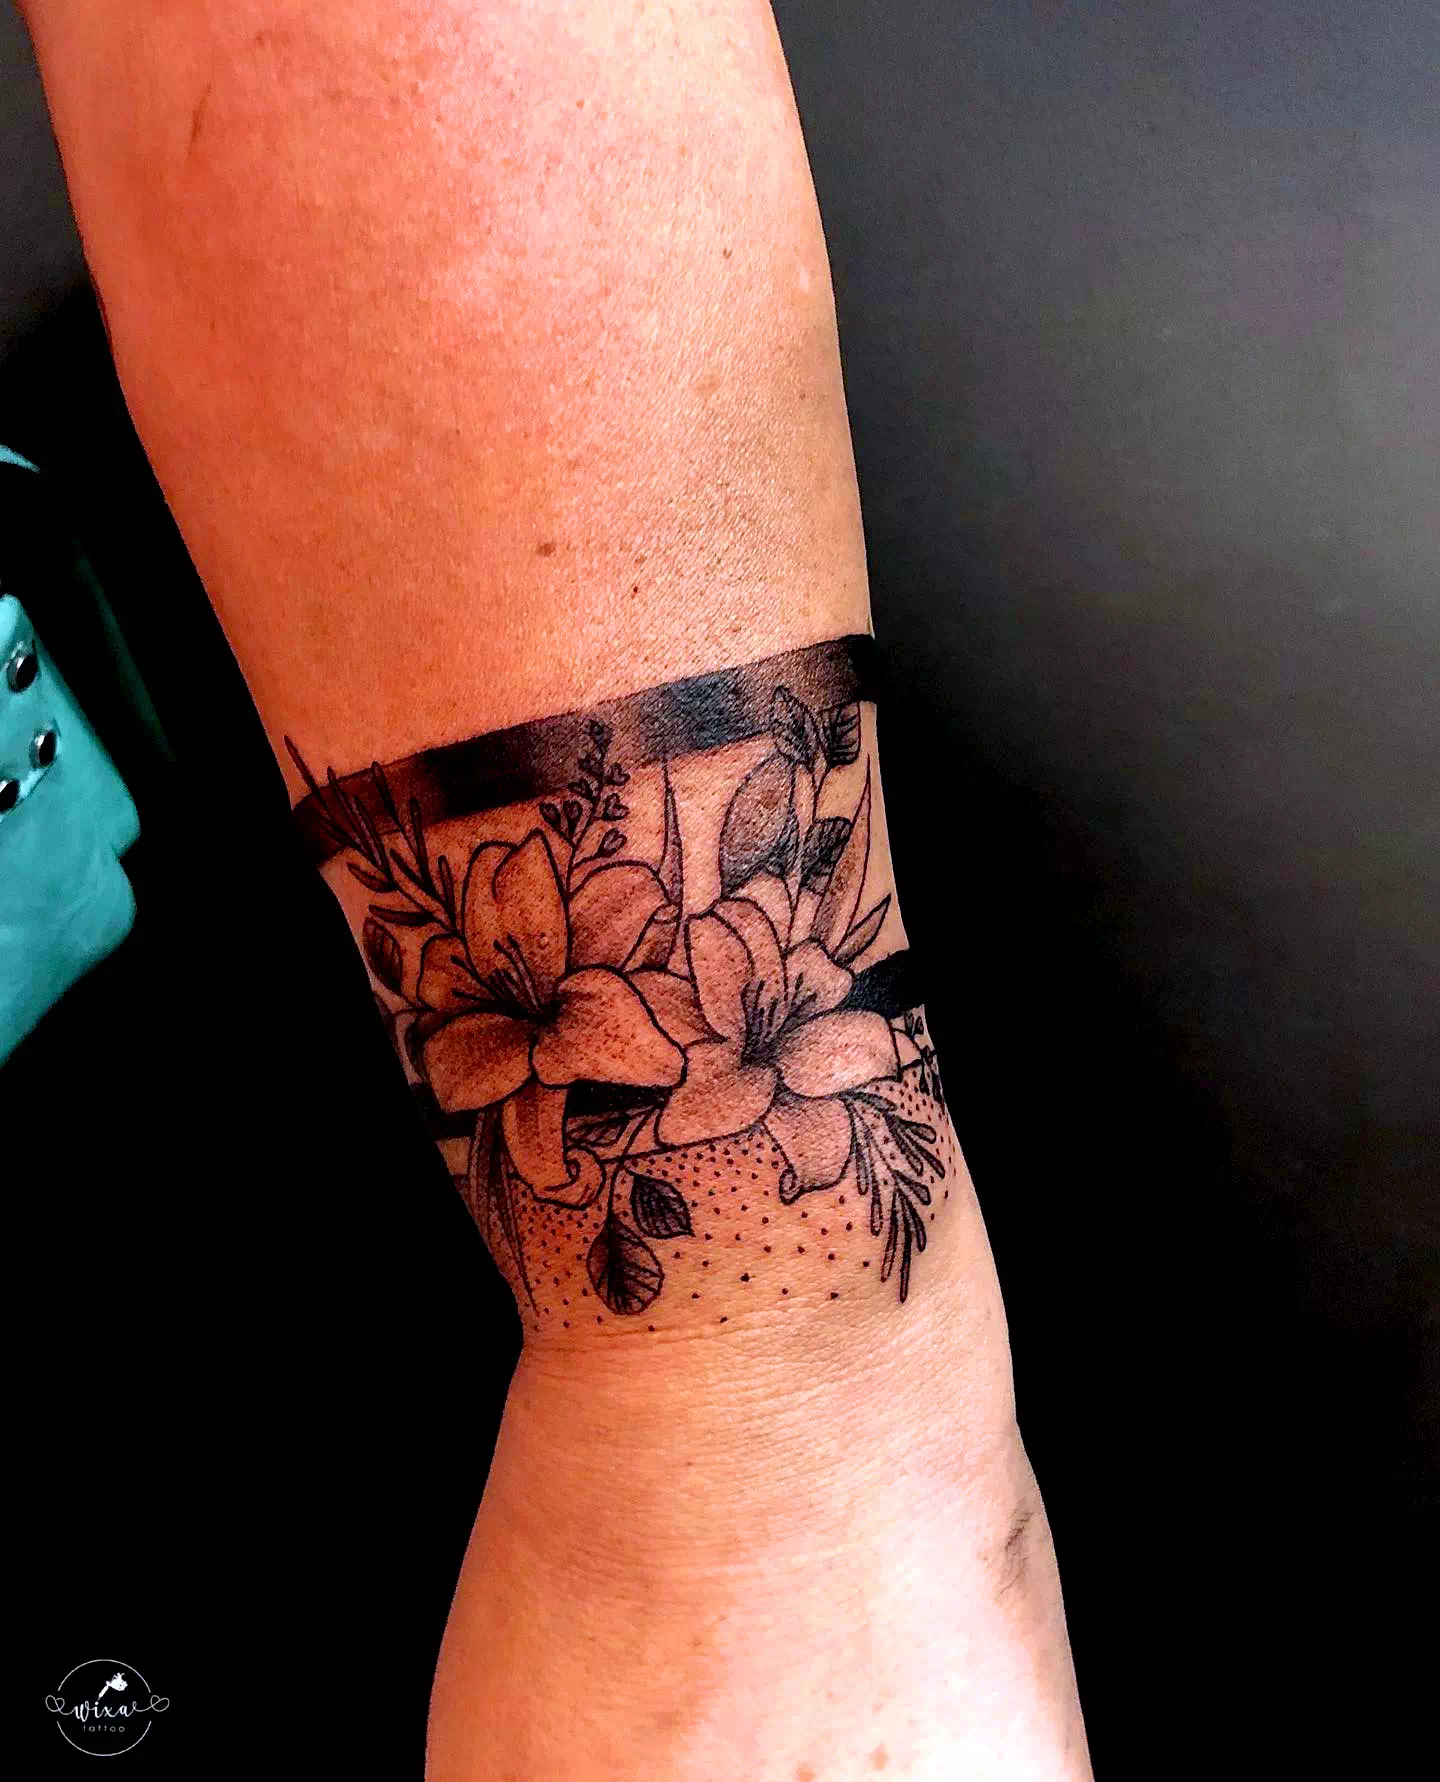 Tatuaje de una flor blanca y negra